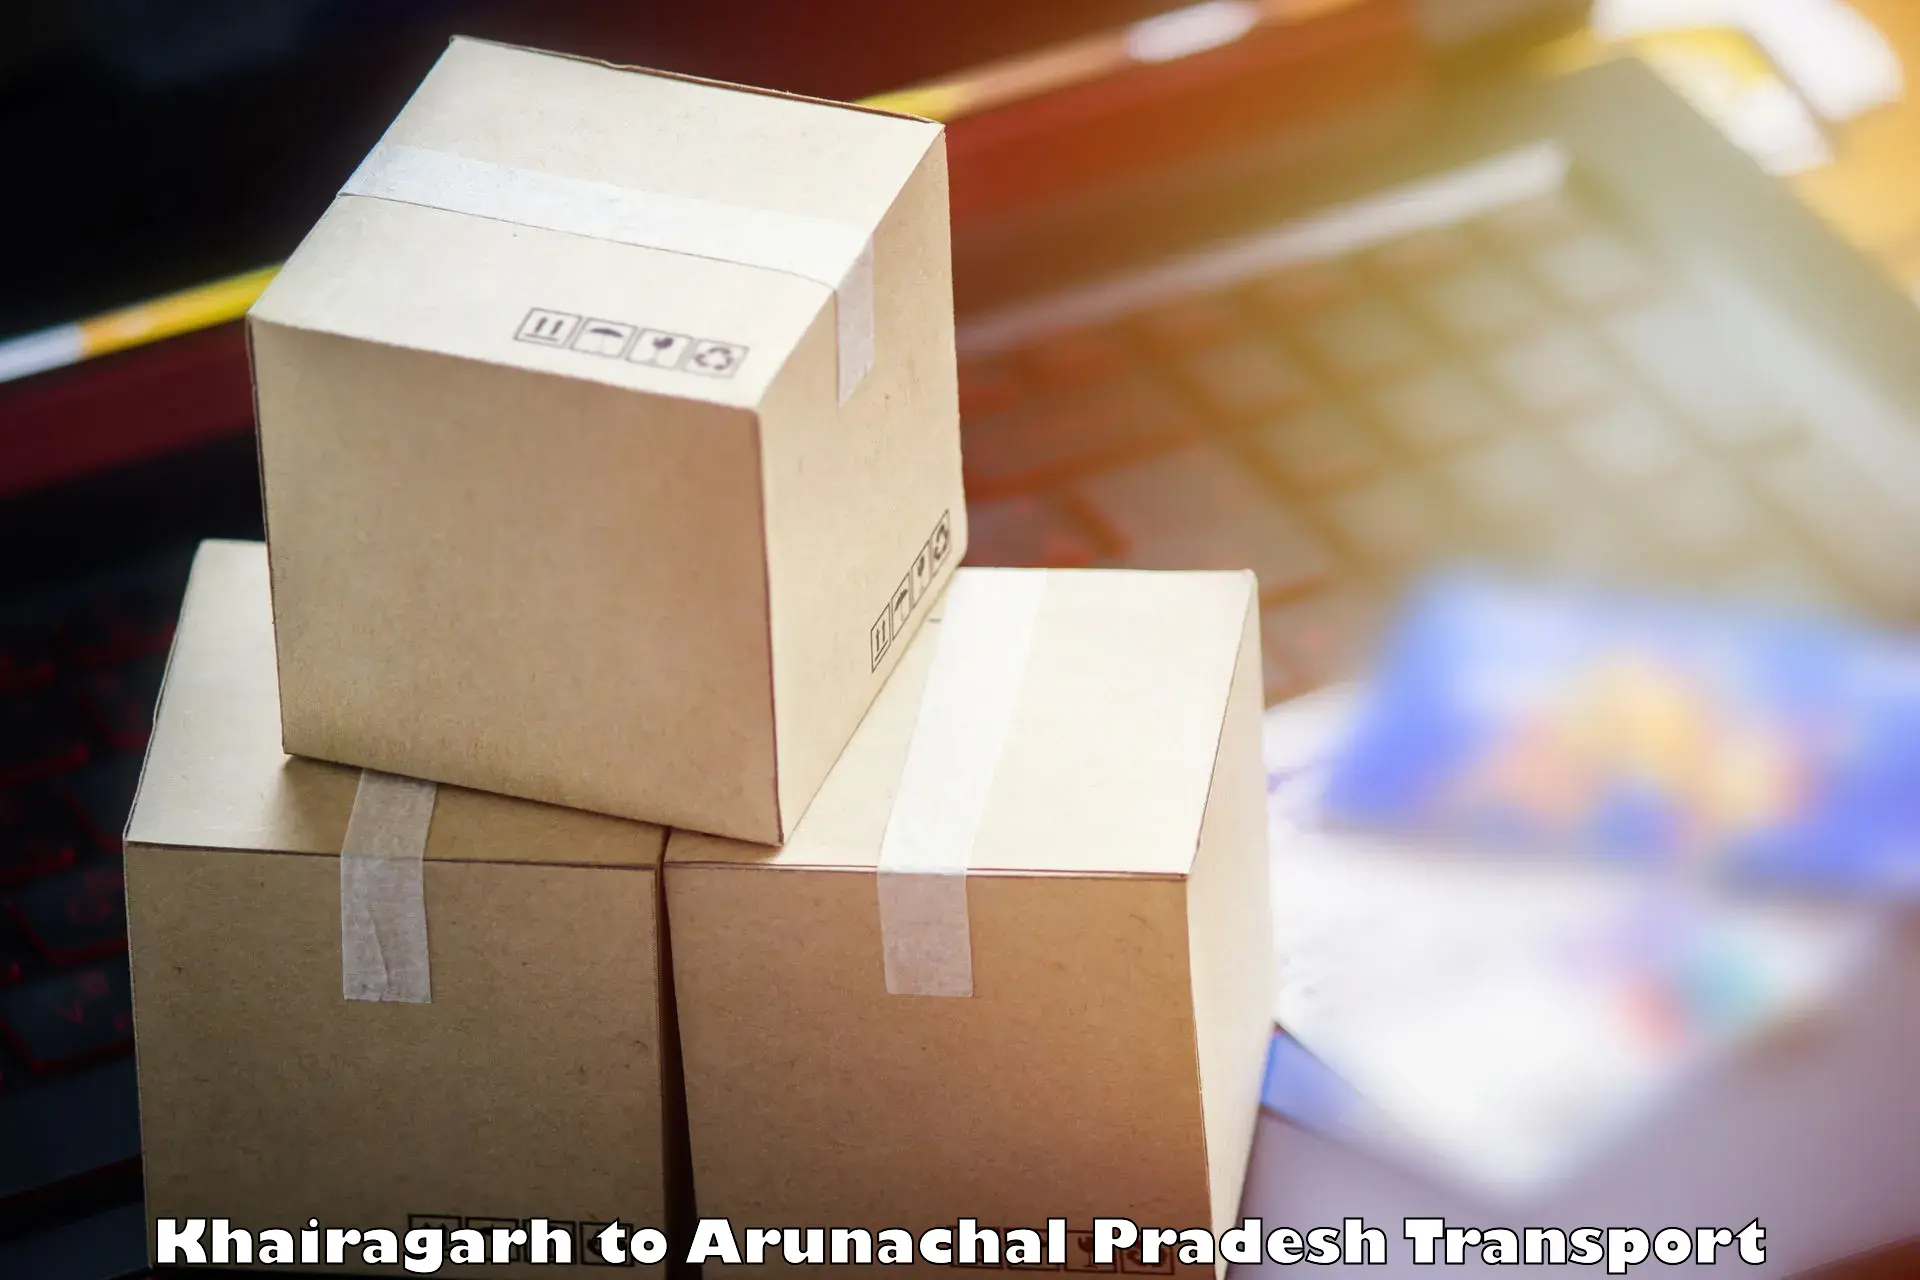 Goods delivery service Khairagarh to Arunachal Pradesh